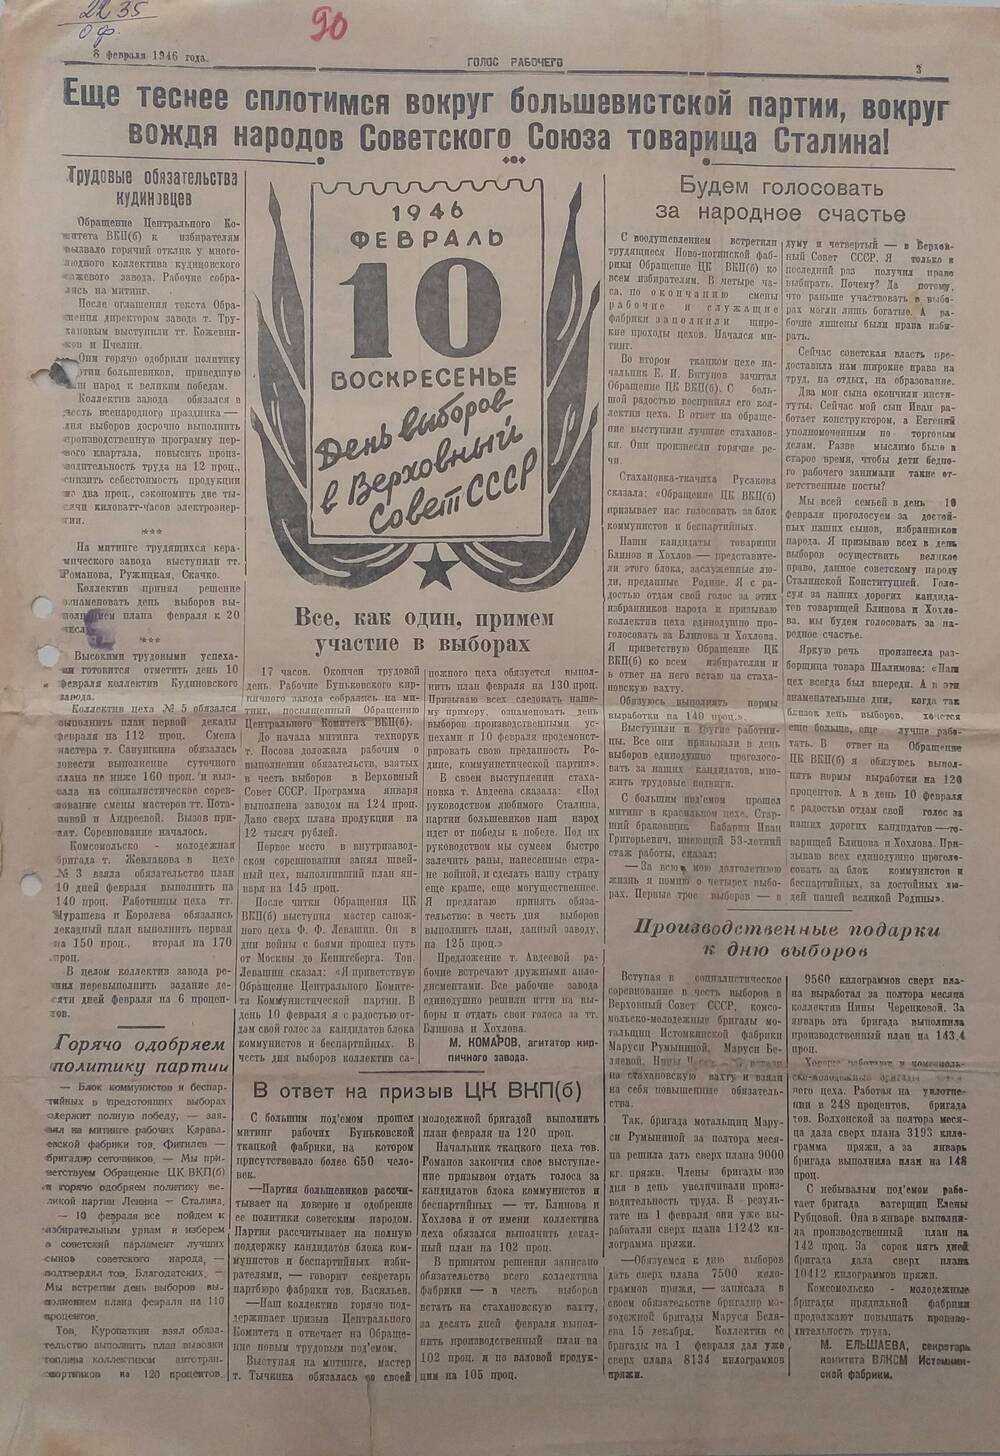 Газета Голос рабочего № 29, орган Ногинского ГК и РК ВКП (б), исполкомов горсовета и райсовета Московской области,  от 
8 февраля 1946 года.